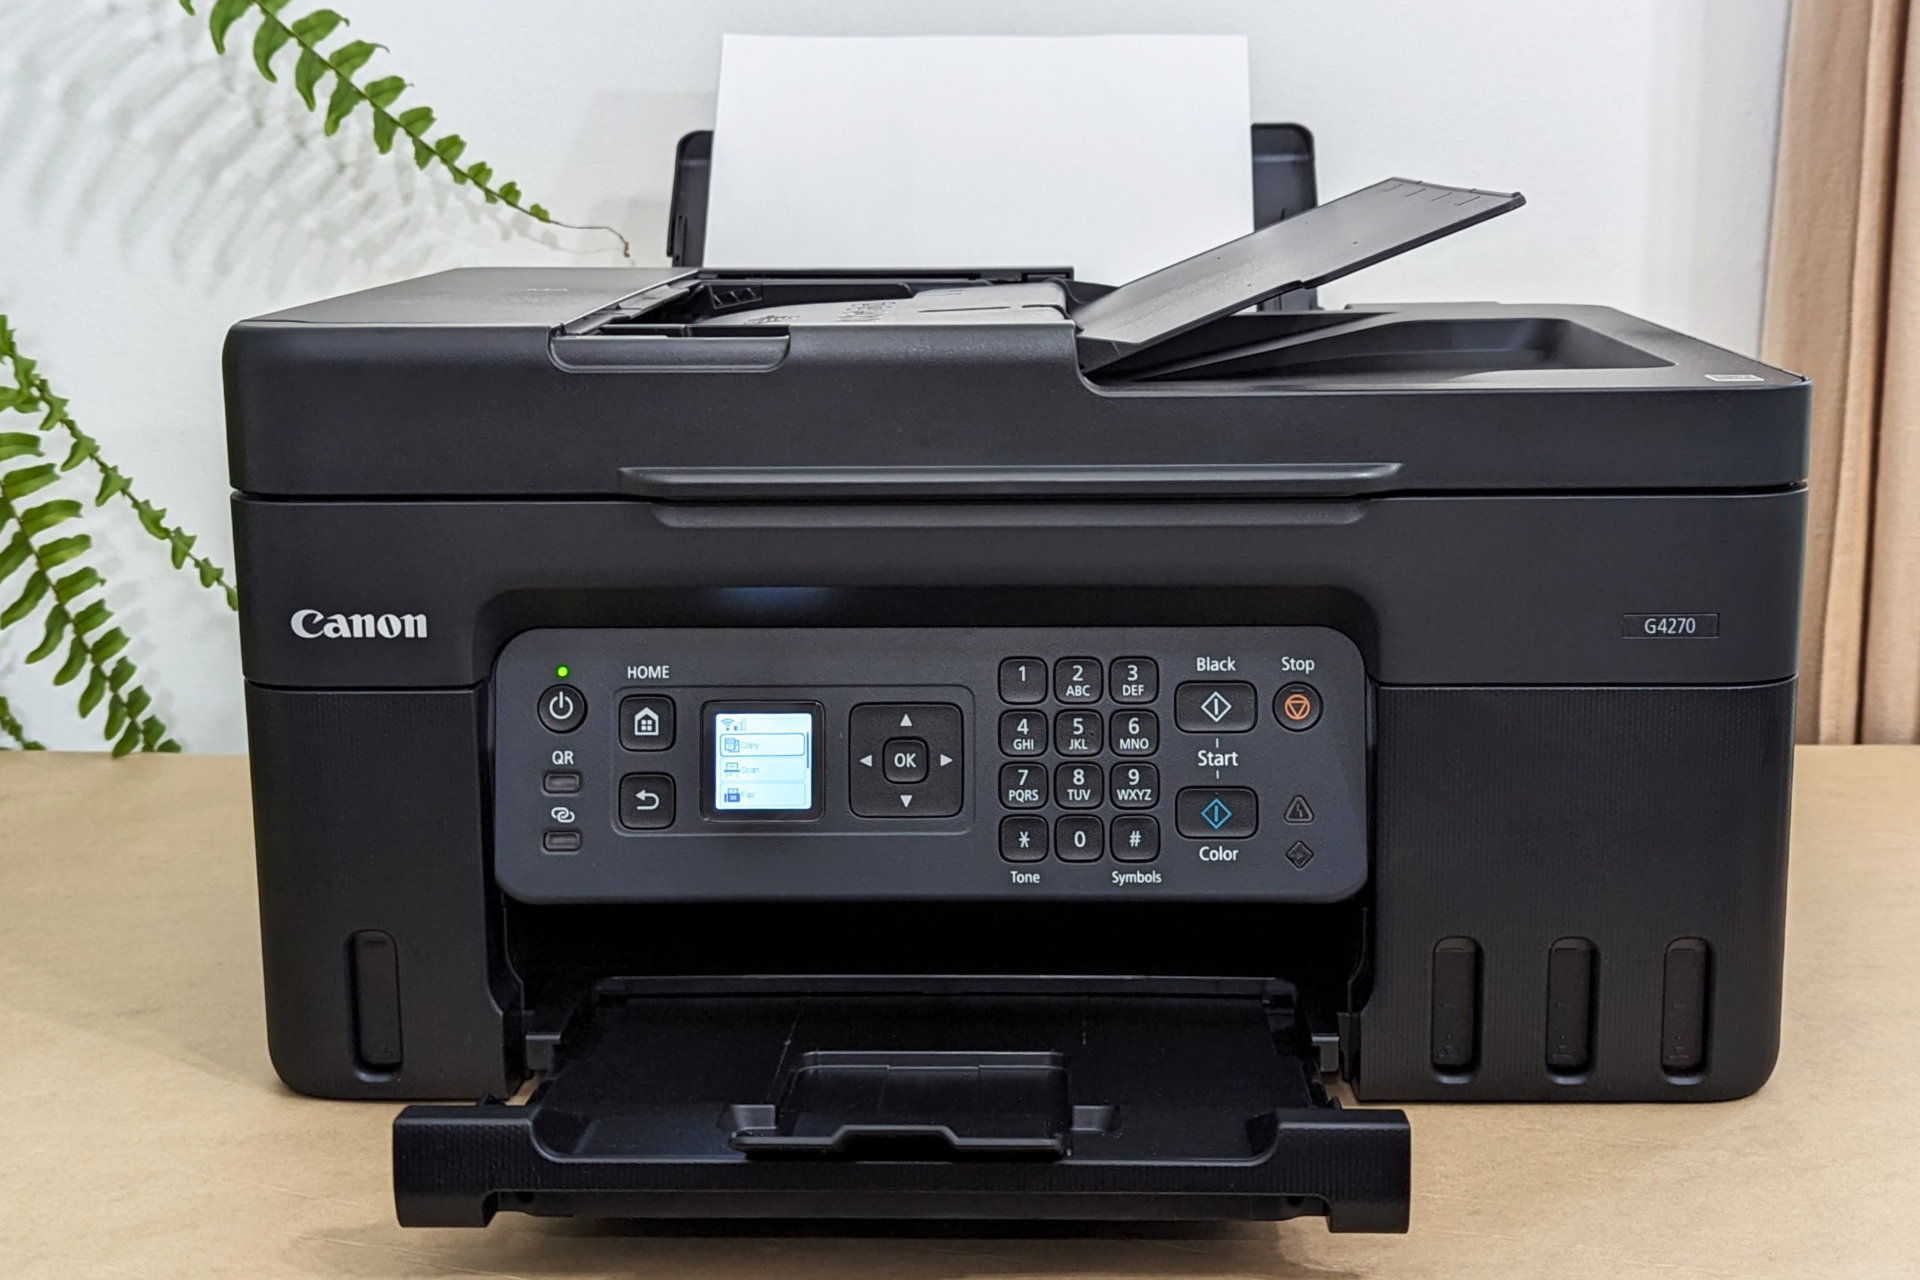 Pixma G4270 کانن یک چاپگر اداری خانگی خوب است.